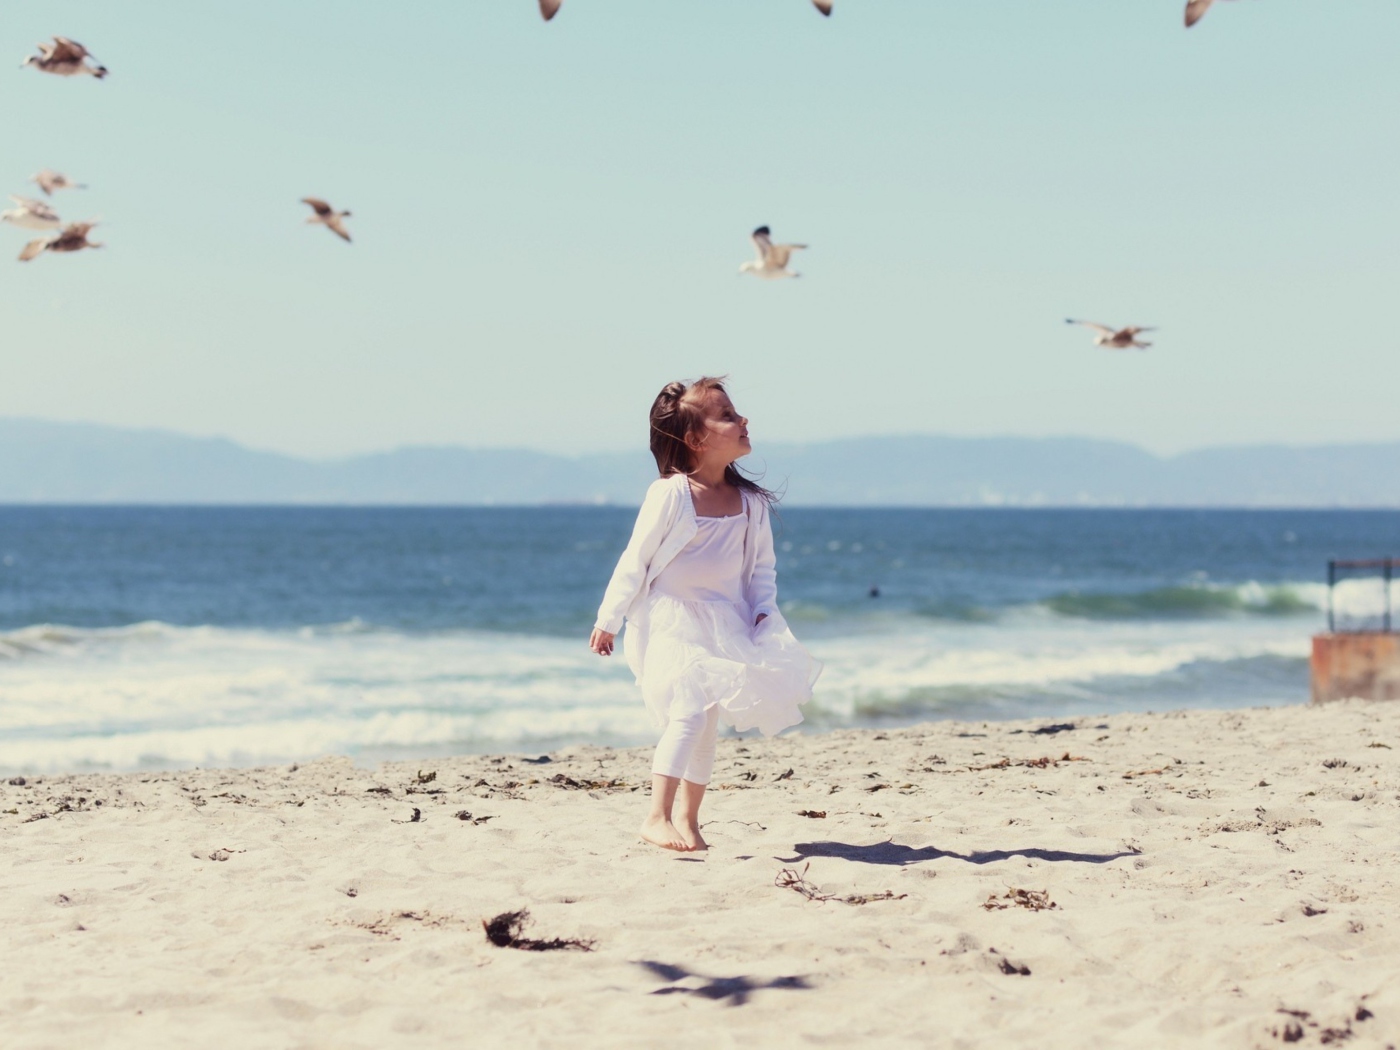 Little Girl At Beach And Seagulls wallpaper 1400x1050